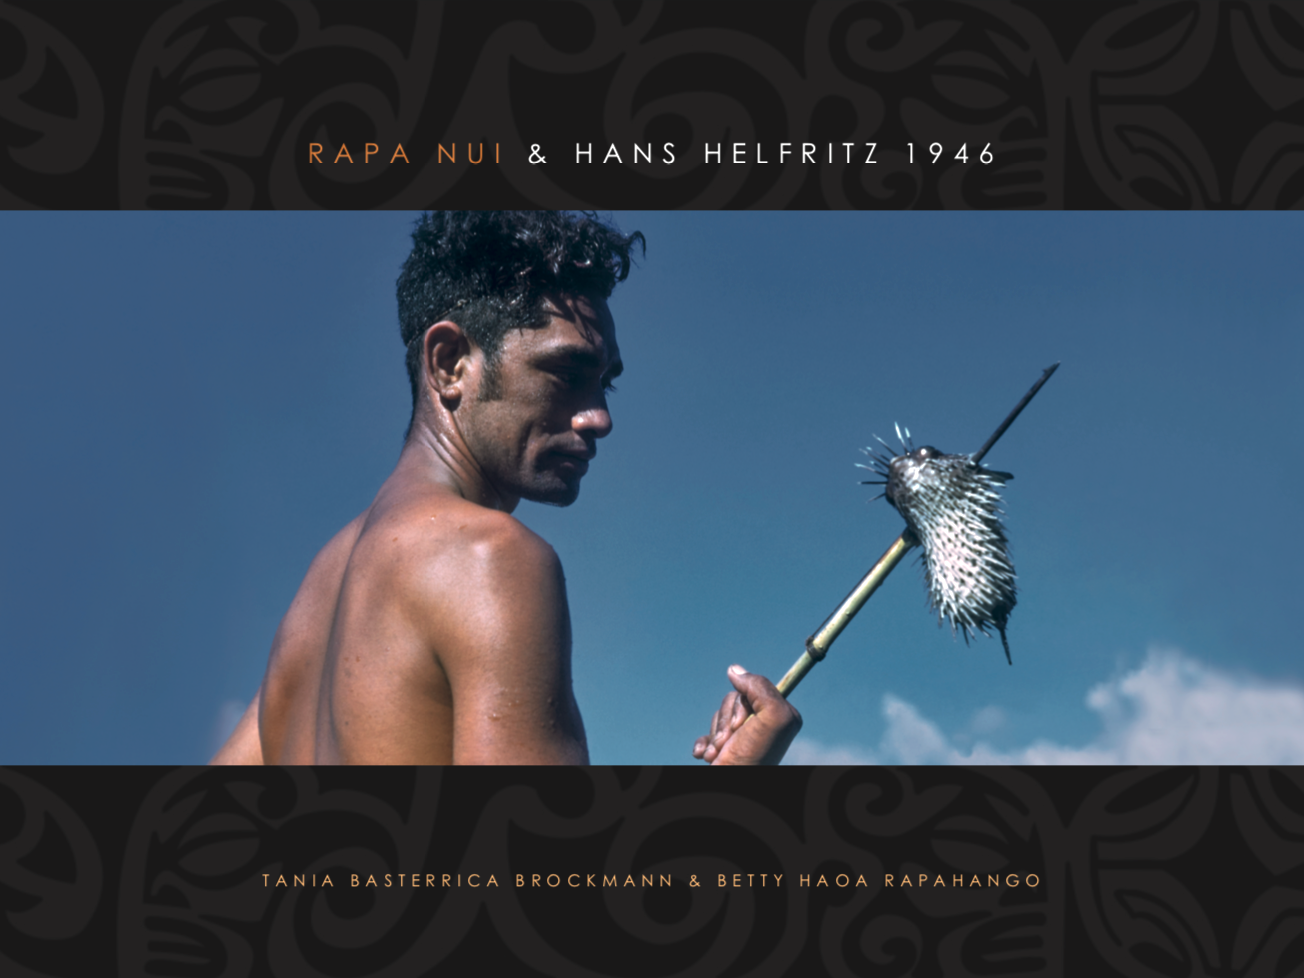 Fotografía de Hans Helfritz muestra a un habitante de Rapa Nui en 1946